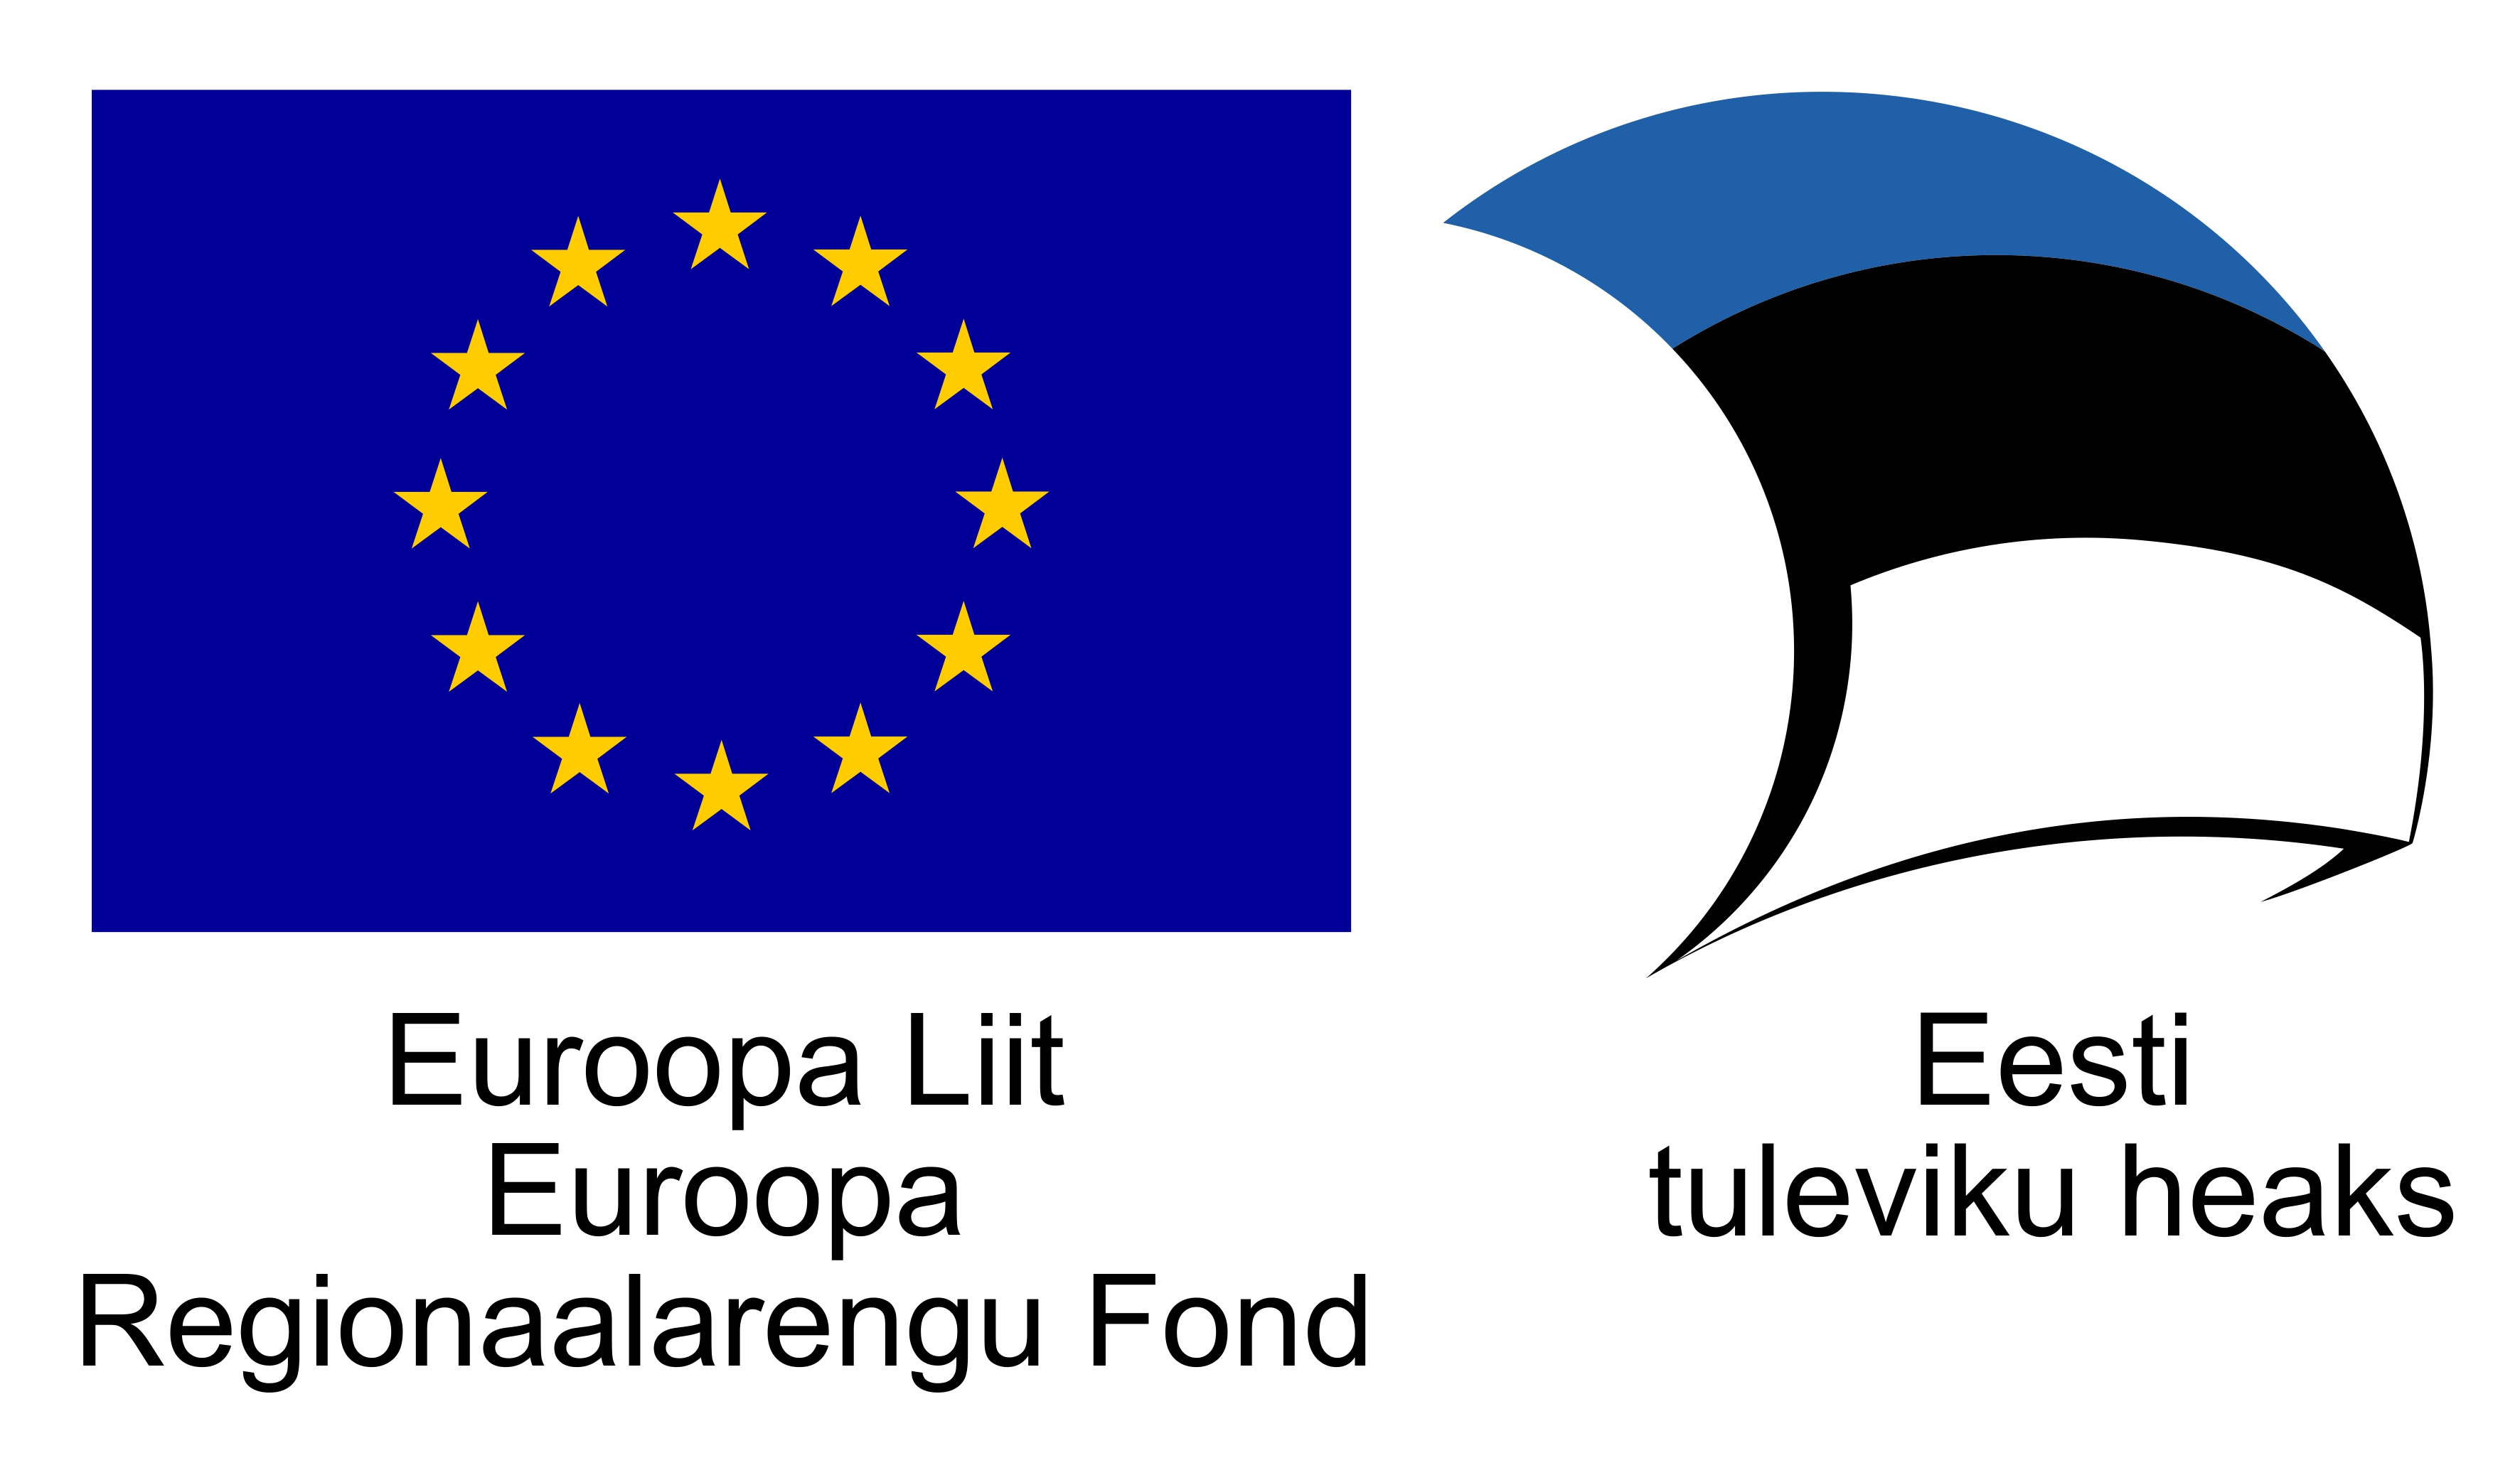 Euroopa Liit Euroopa Regionaalarengu Fond, Eesti tuleviku heaks